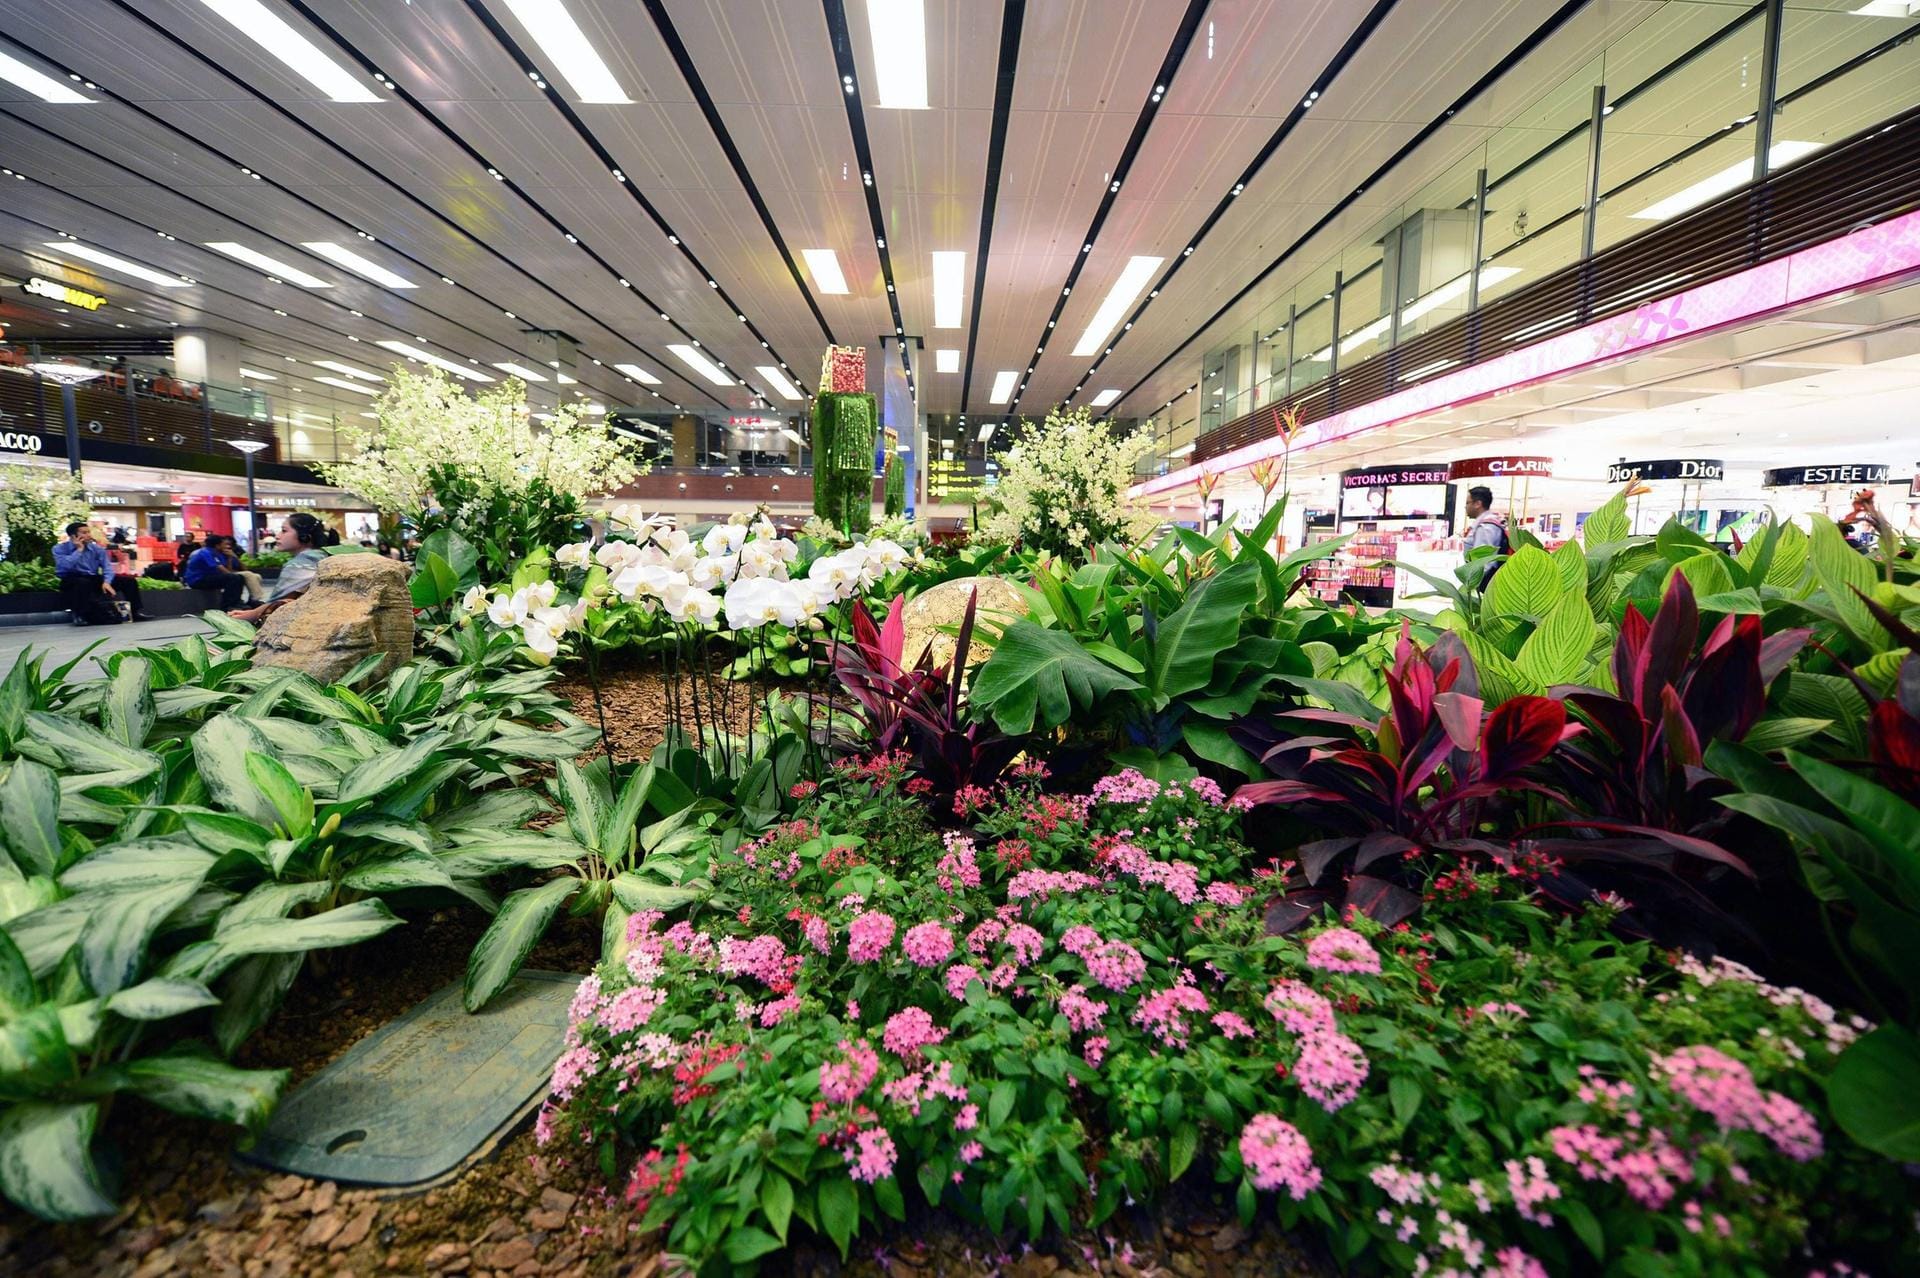 Blumen- und Pflanzenpracht im Changi International Airport in Singapore.